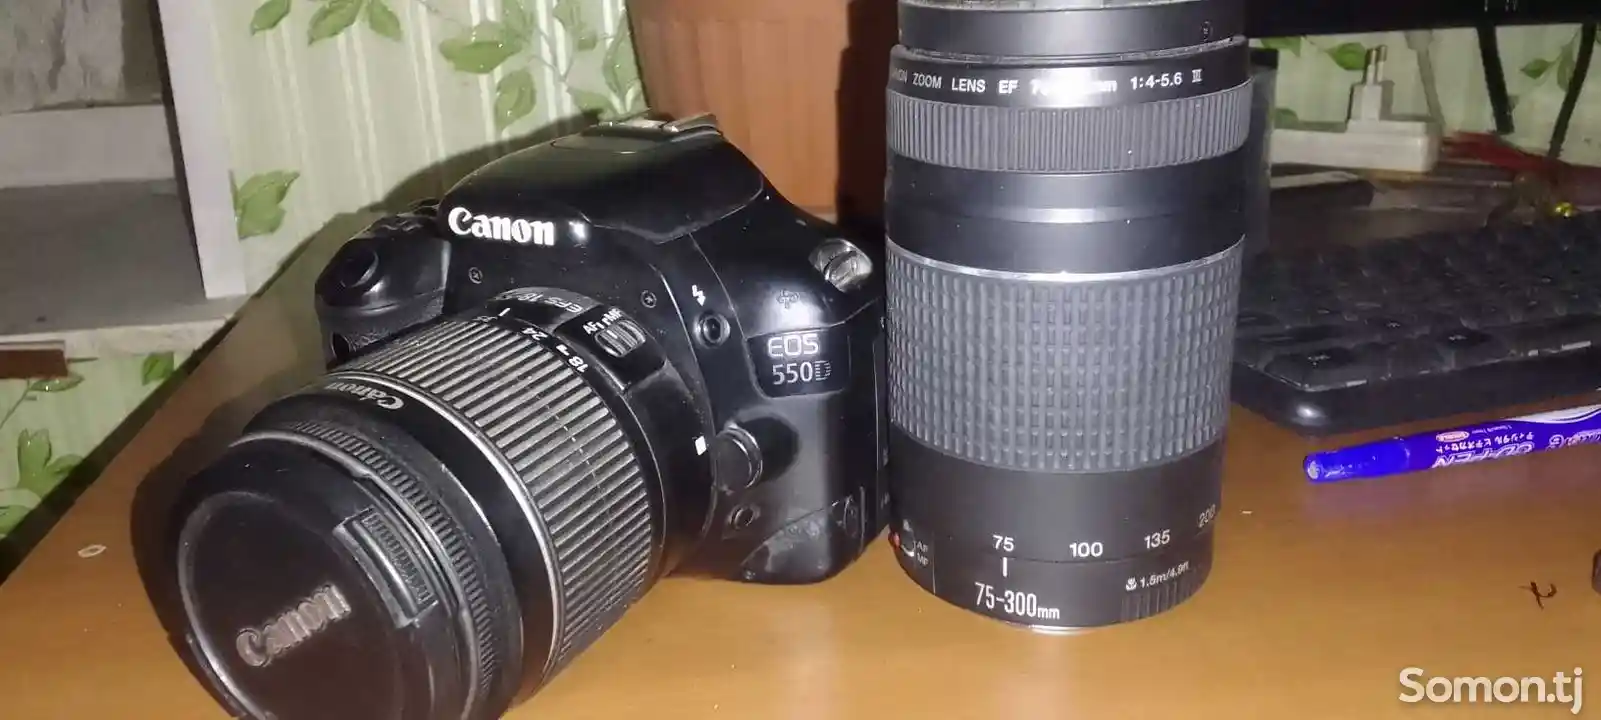 Фотоаппарат Canon 550D obektiv 35&300-1